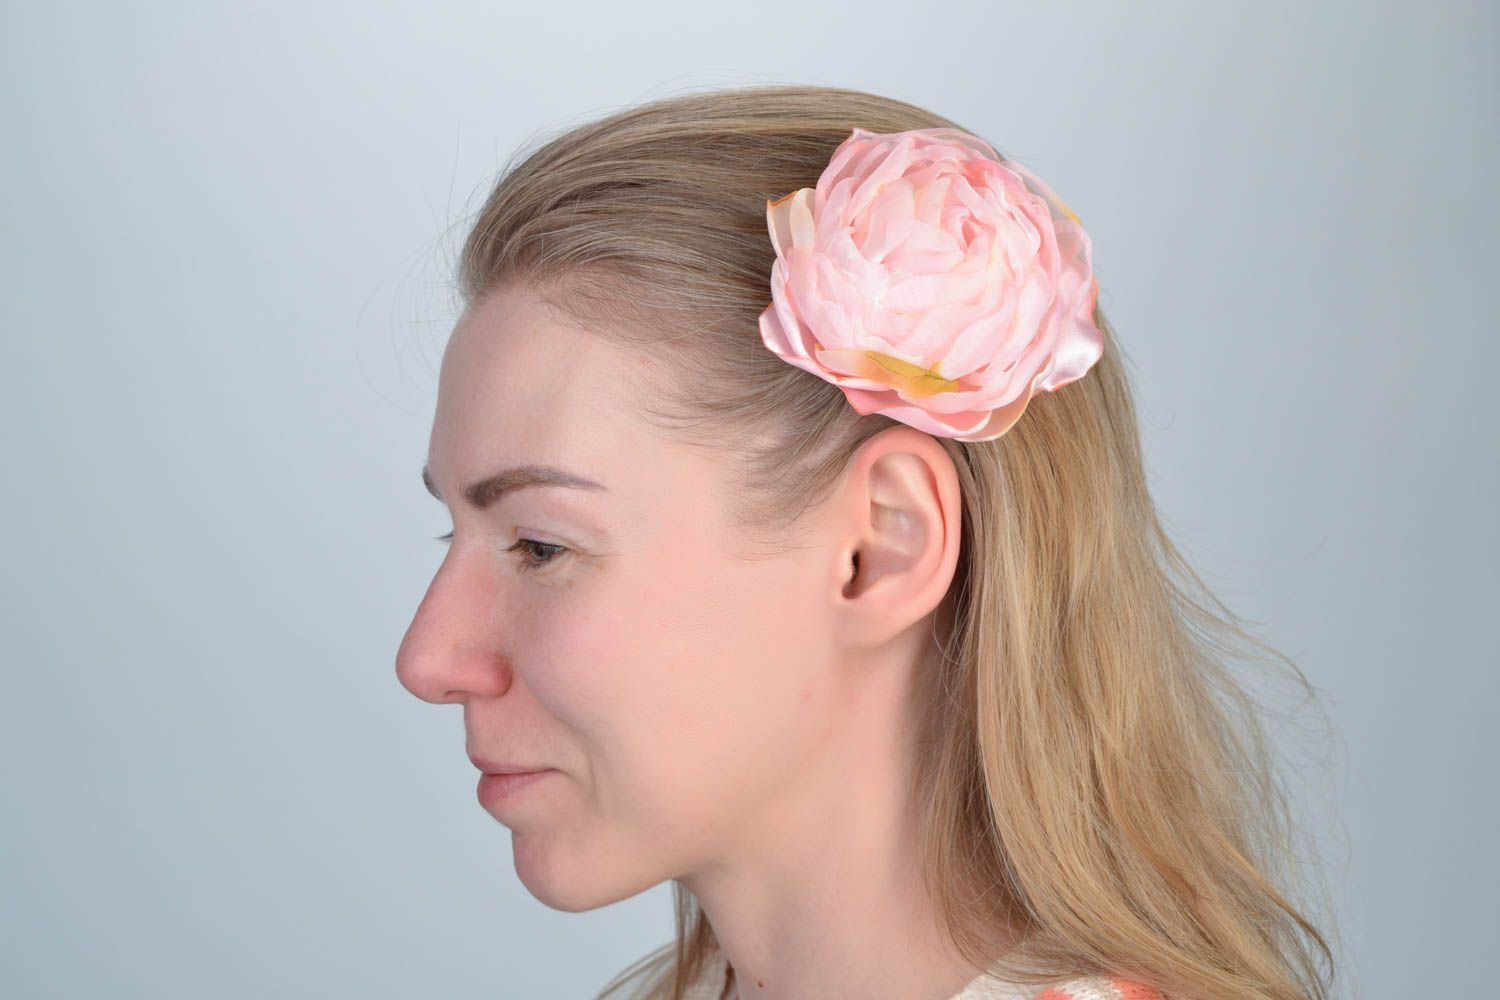 Красивая заколка для волос в виде цветка ручной работы в технике батик Роза фото 1